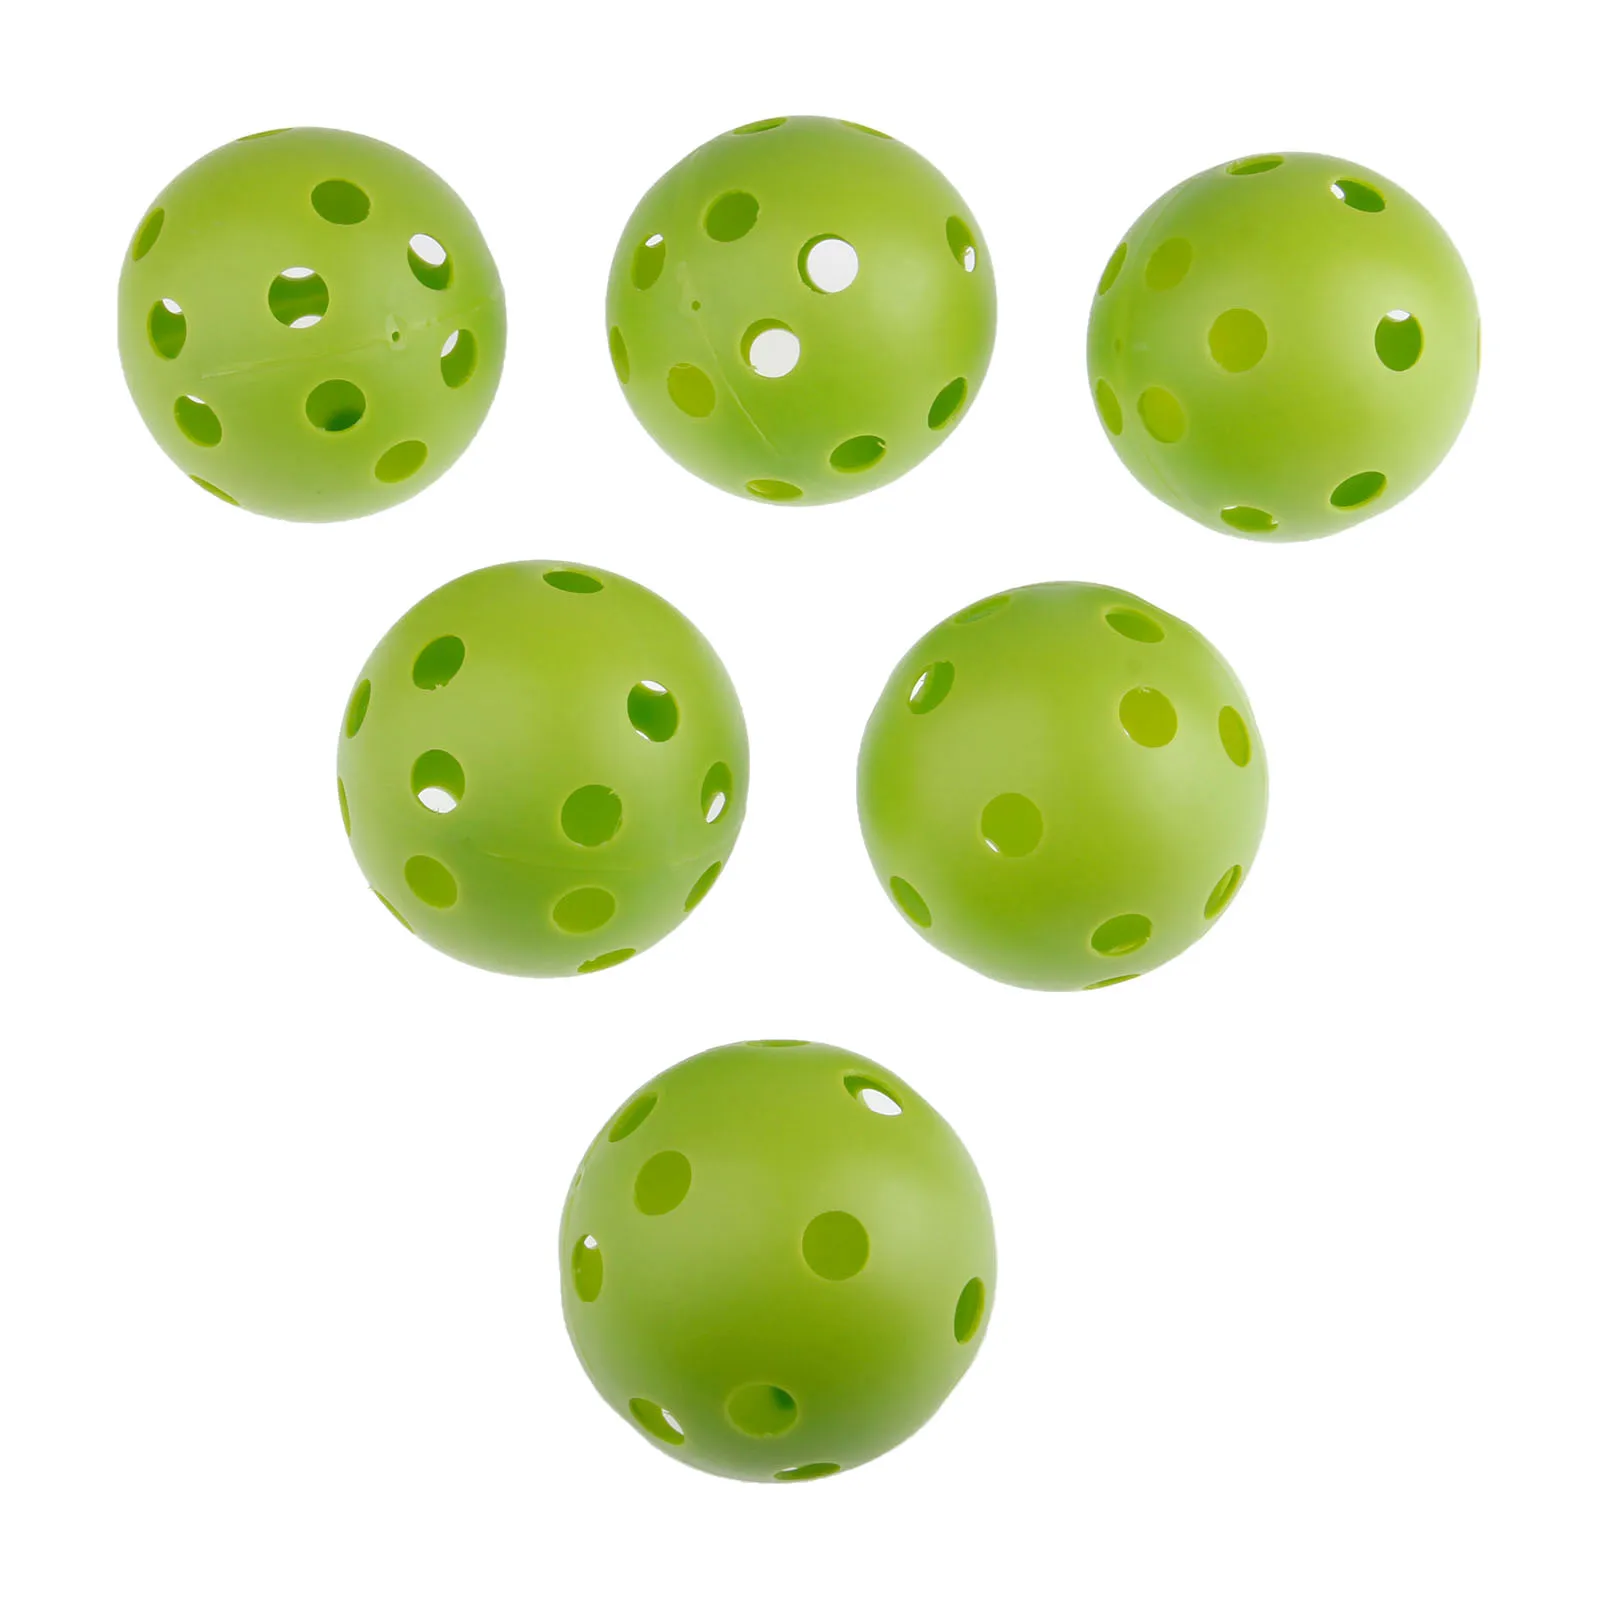 SURIEEN 10 шт Пластиковые Мячи для гольфа 72 мм воздушные шары полые с отверстием мячи для гольфа для внутреннего спорта на открытом воздухе тренировочные мячи для гольфа